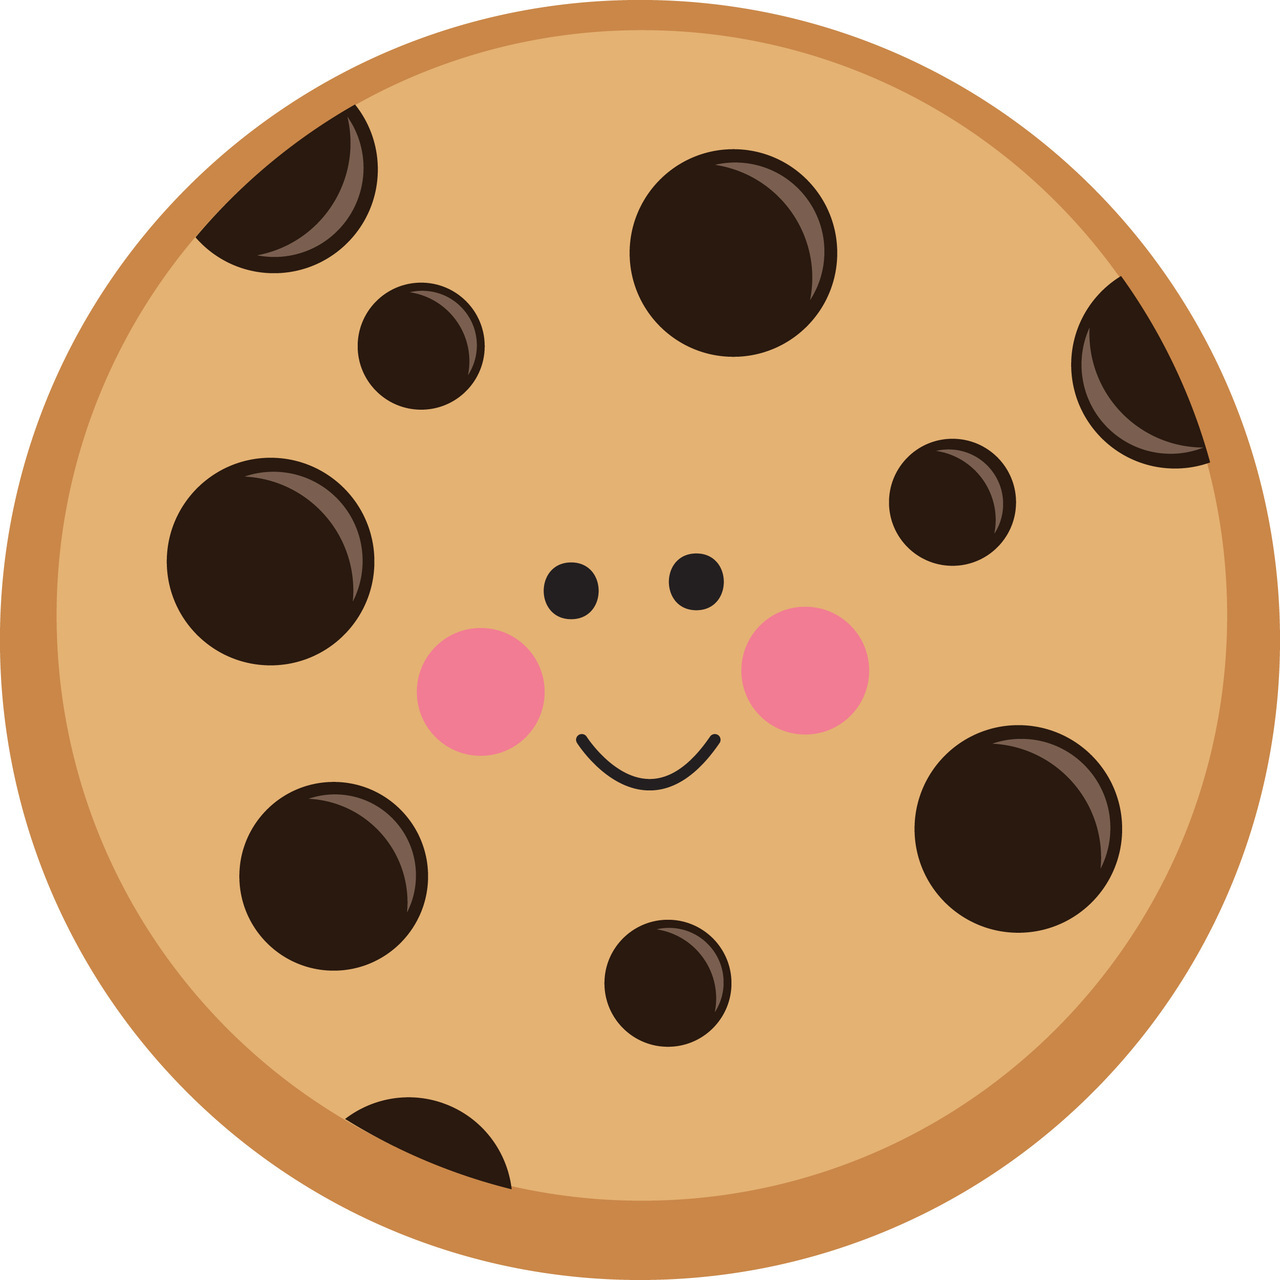 Cookies clip art image 